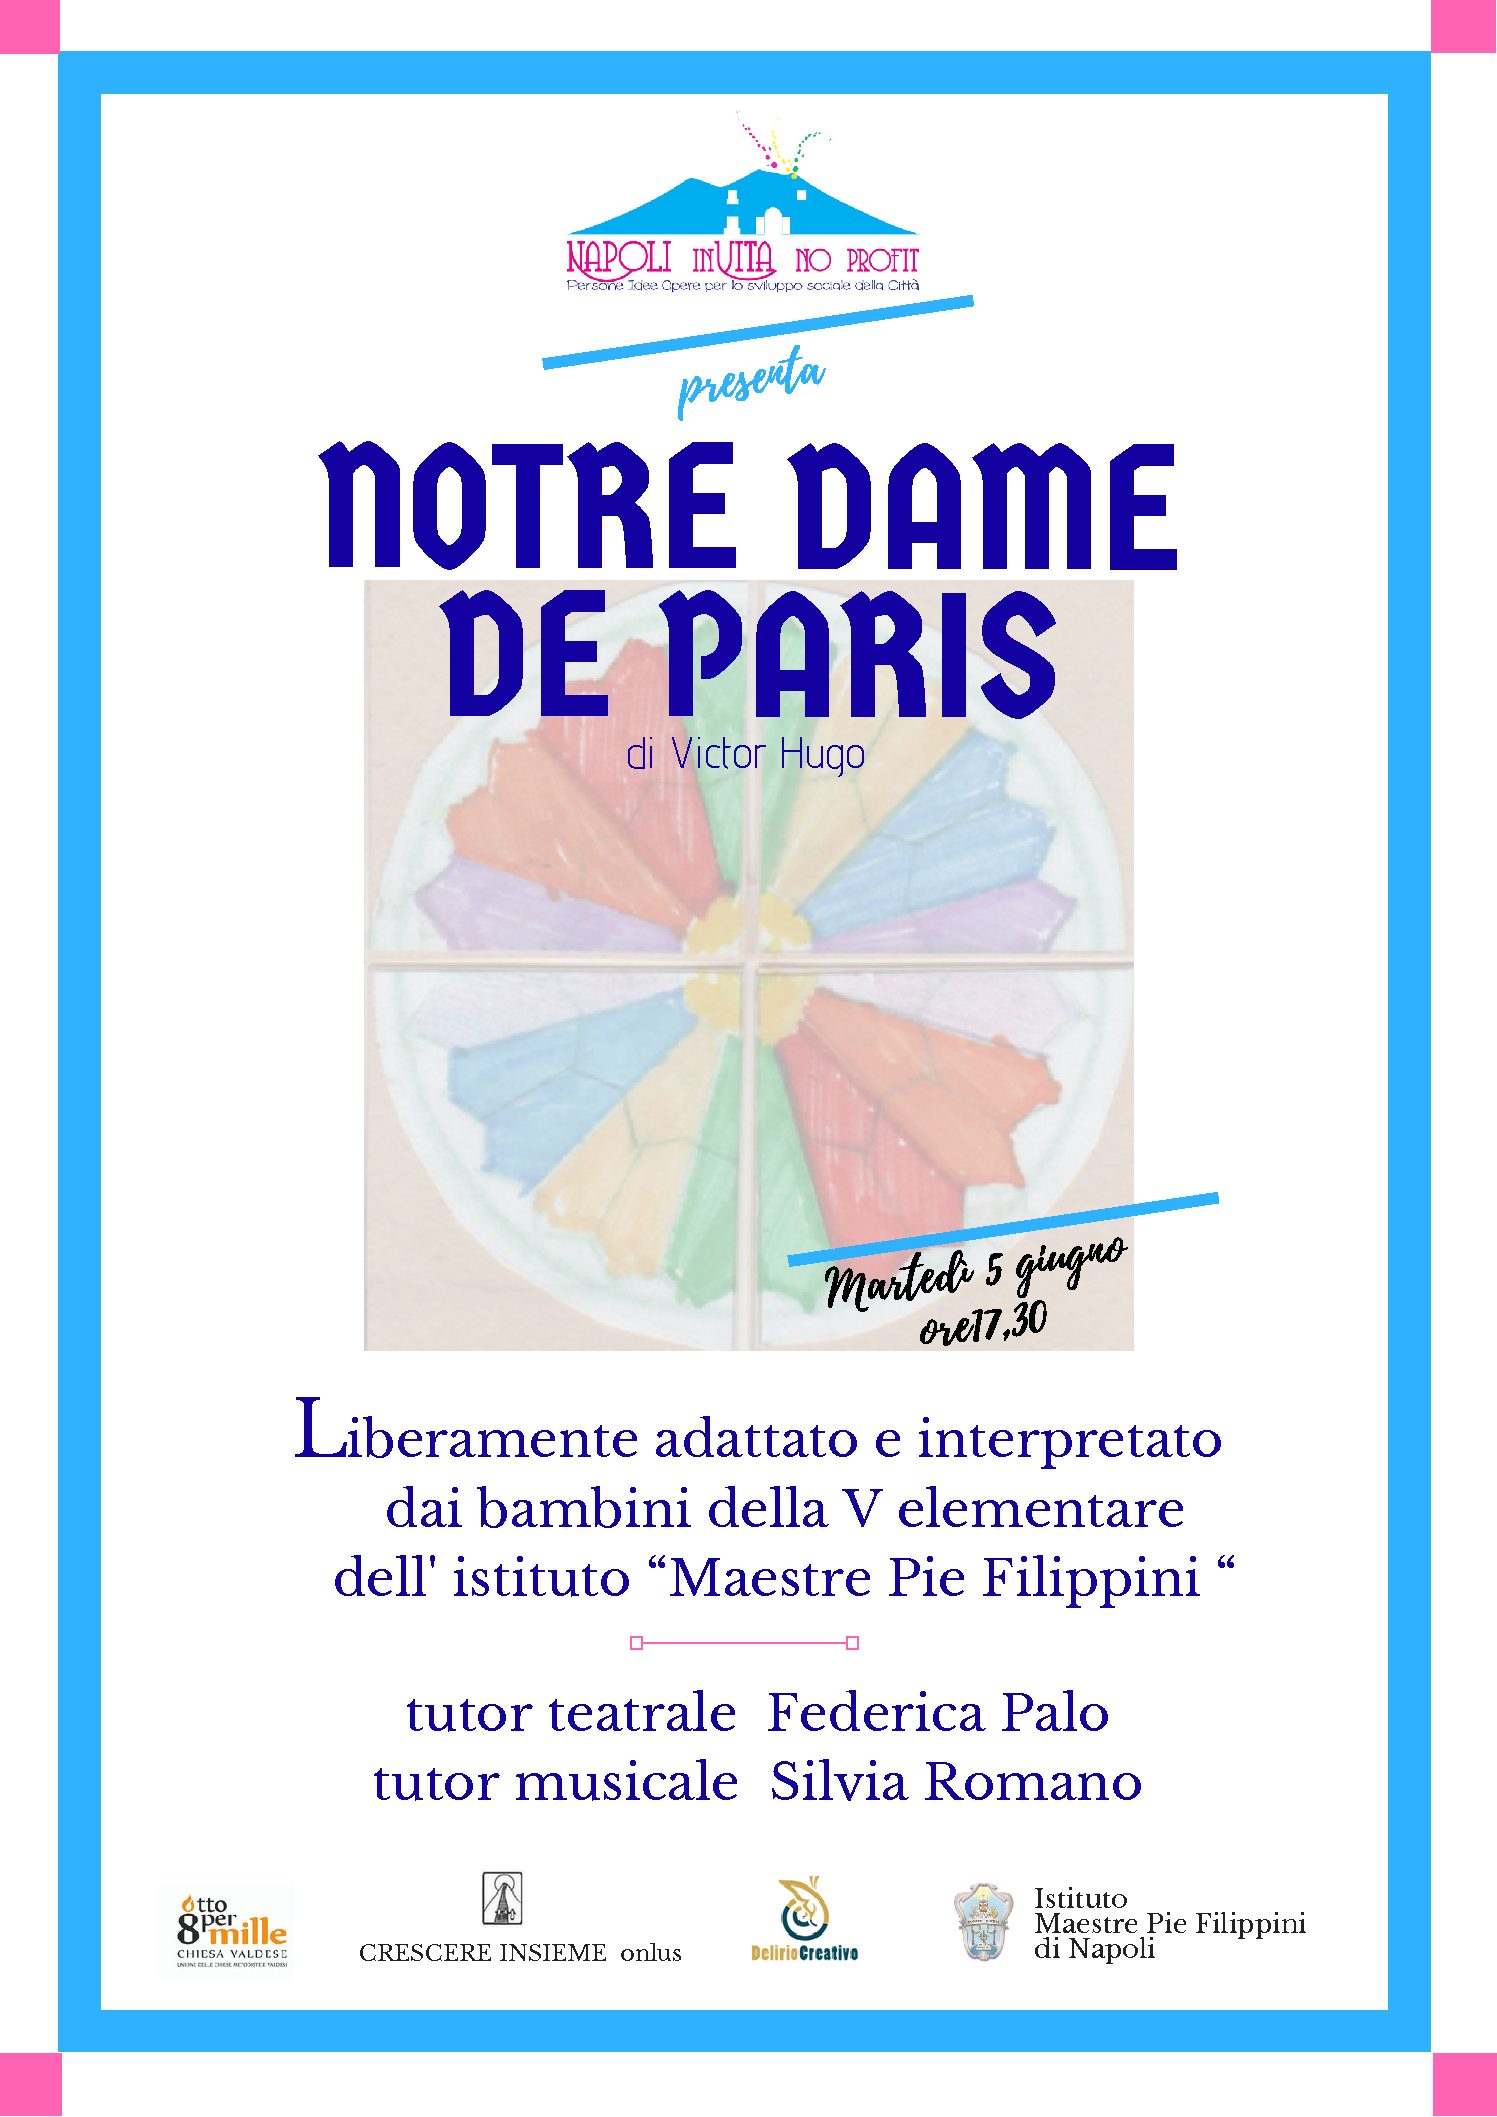 Il Laboratorio di Artigianato, Creatività e Tradizioni (ACT LAB 2.0) presenta la storia del deforme Quasimodo (“Notre Dame de Paris”)